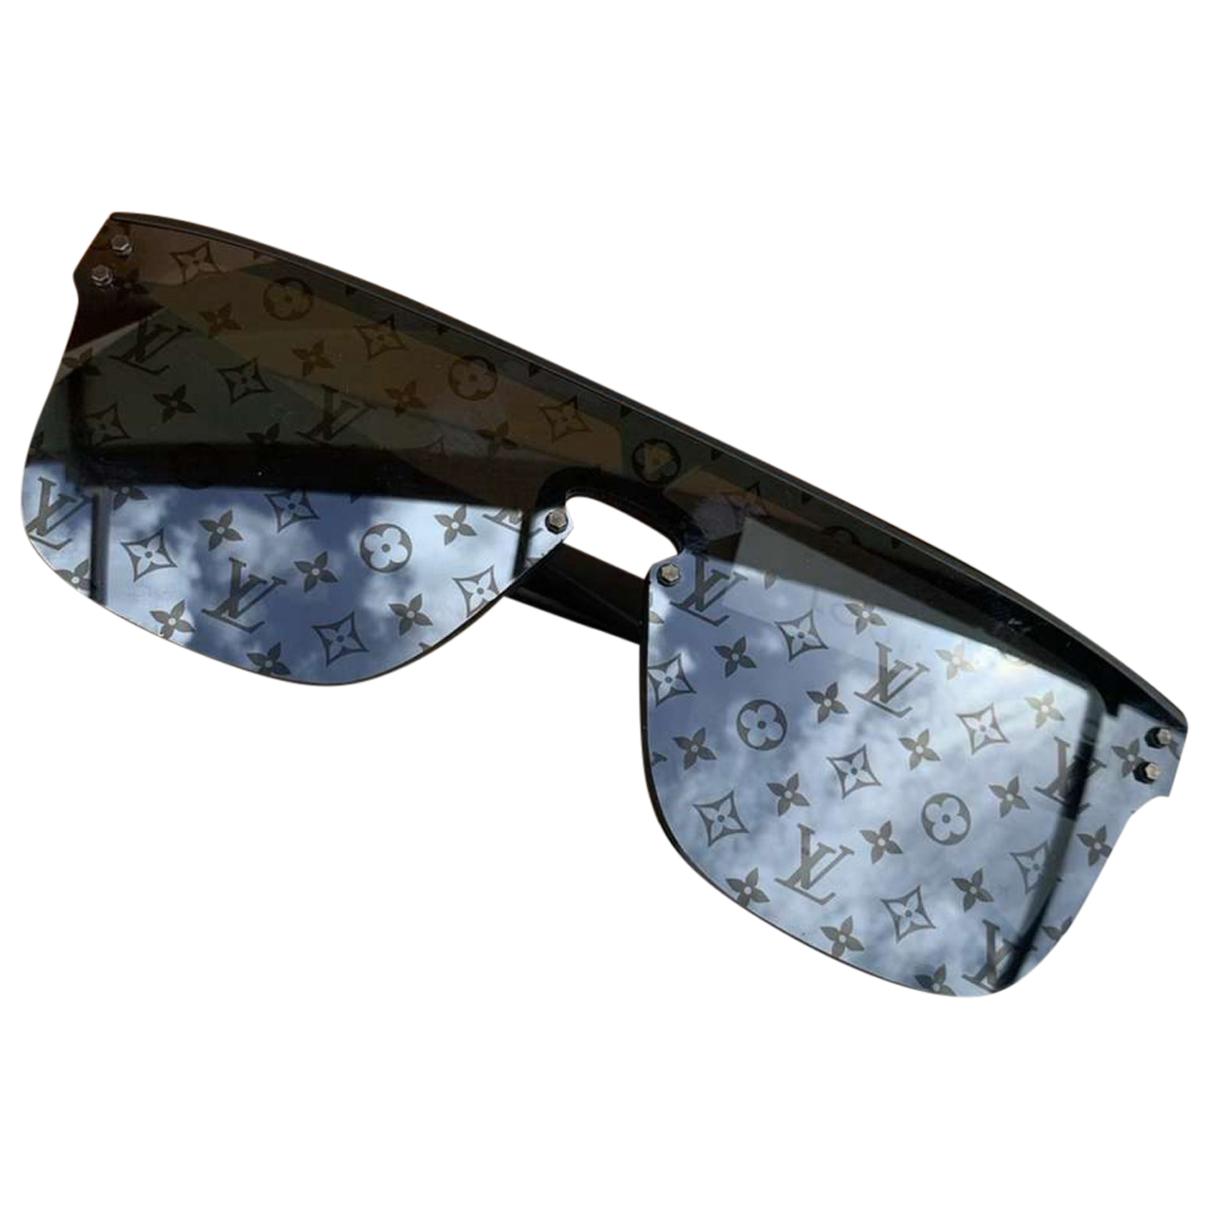 Sunglasses Louis Vuitton Black in Plastic - 35022381